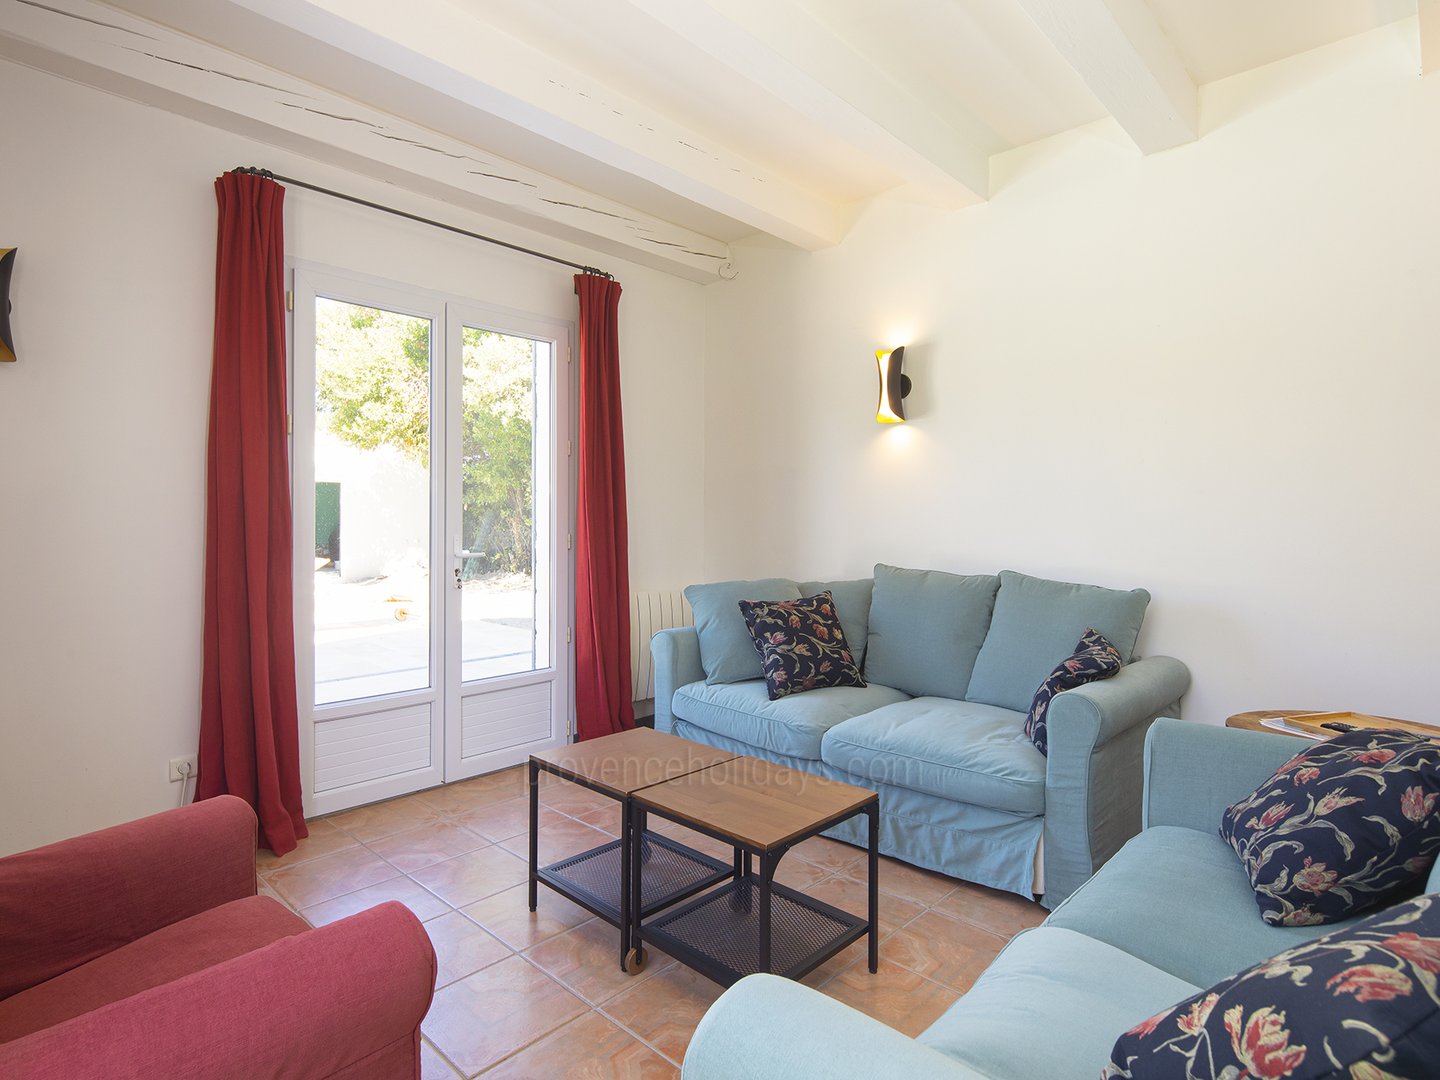 27 - La Maison de Village: Villa: Interior - Guest House living room 